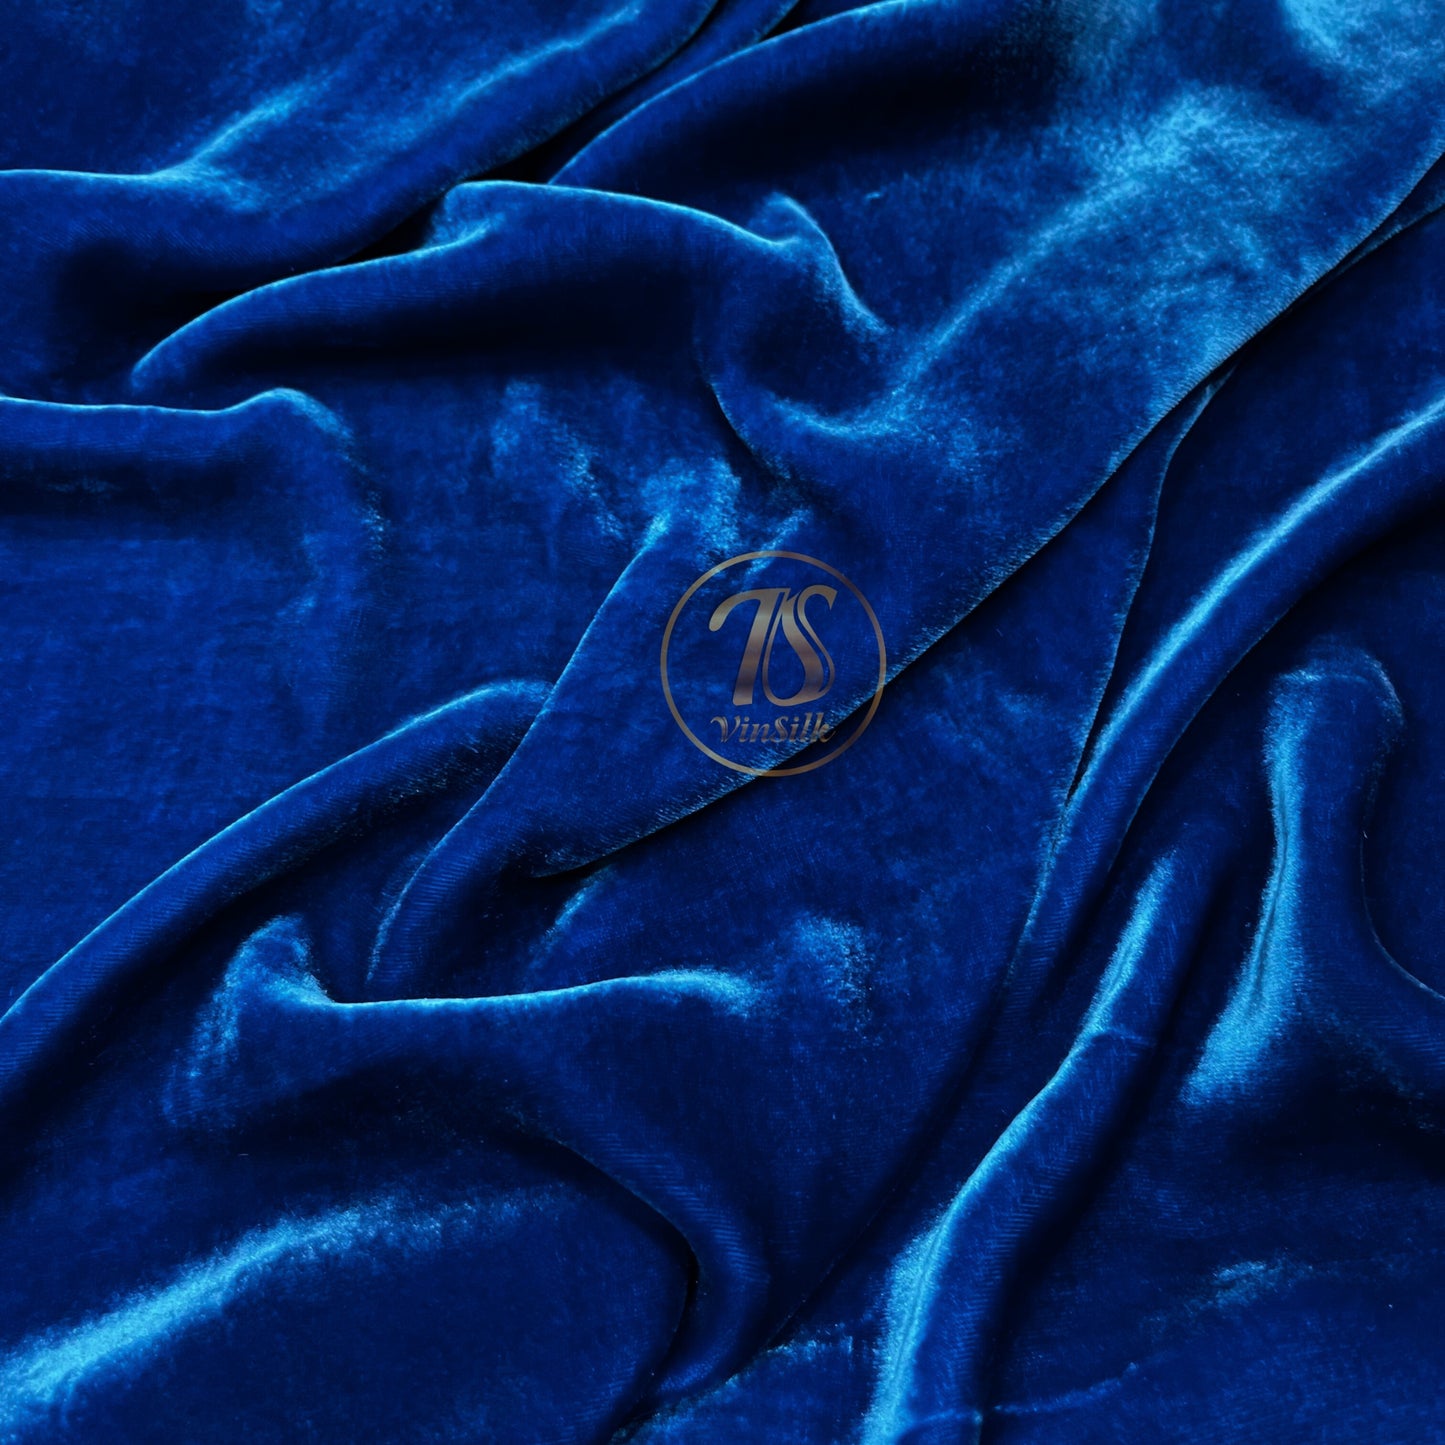 100% MULBERRY SILK VELVET fabric by the yard - Luxury Silk Velvet for Dress, Skirt, High End Garment - Silk apparel fabric - Blue velvet